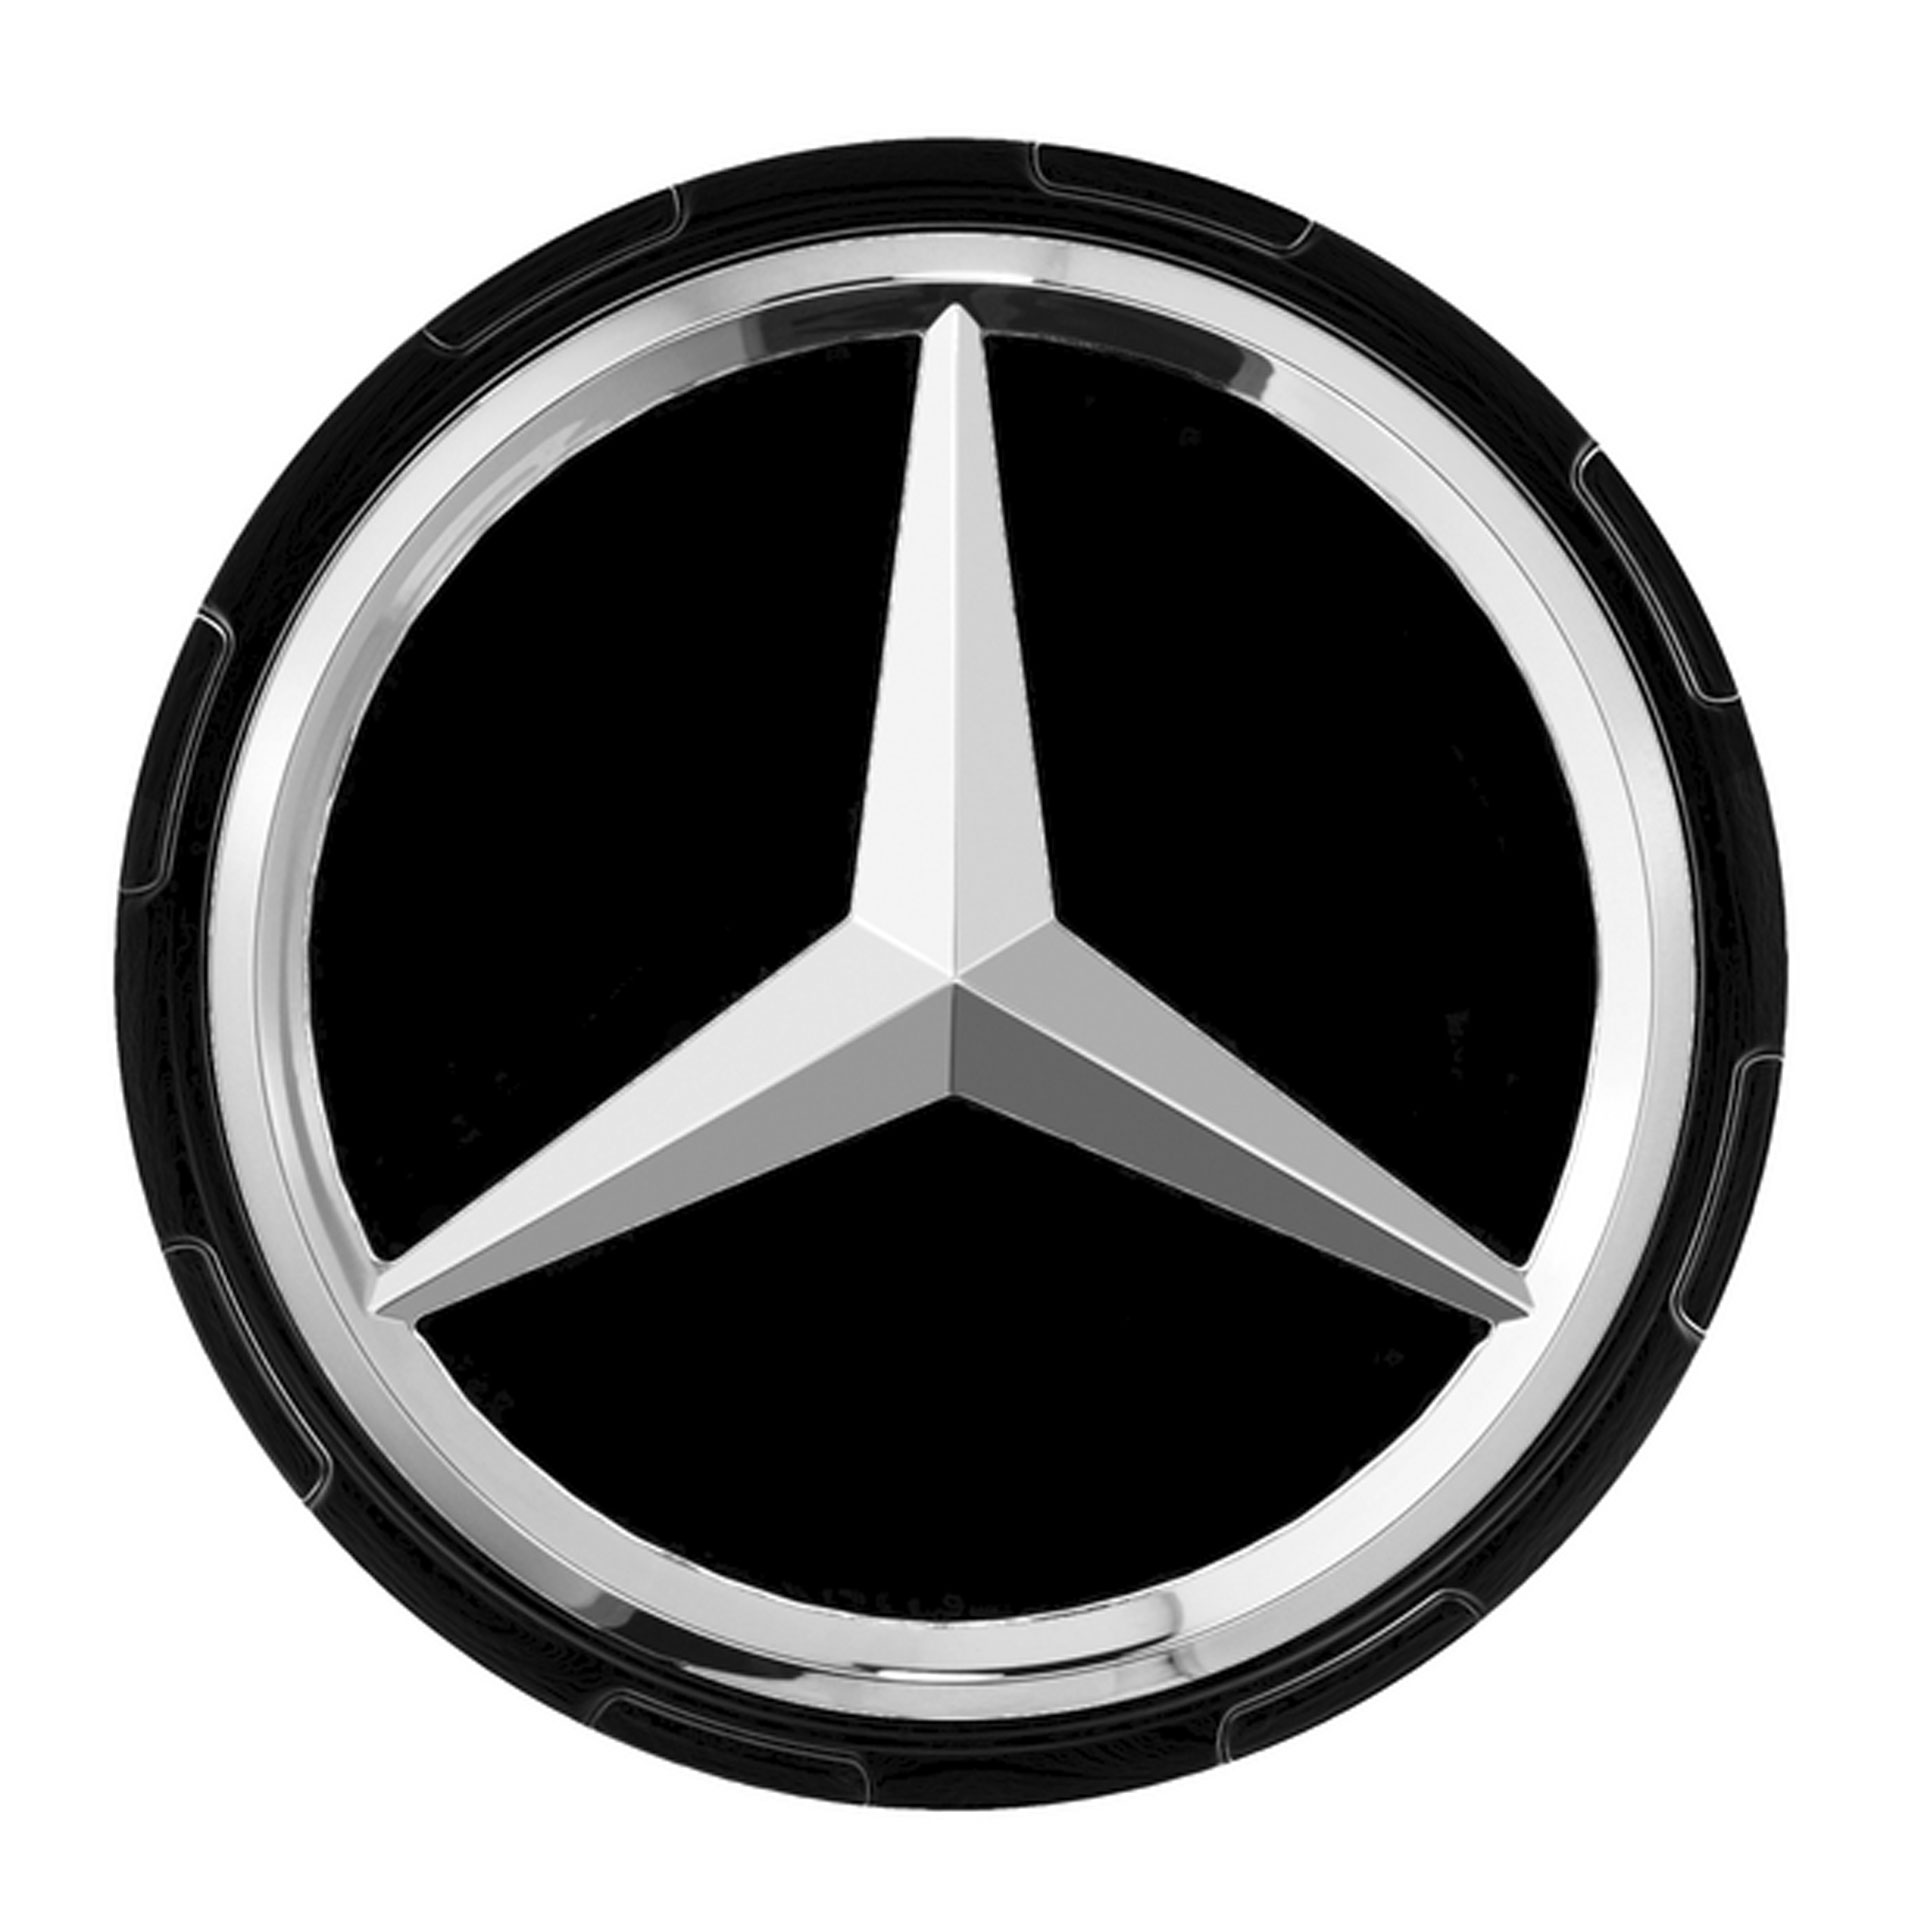 Mercedes-AMG Radnabenabdeckung Zentralverschlussdesign schwarz A00040009009040